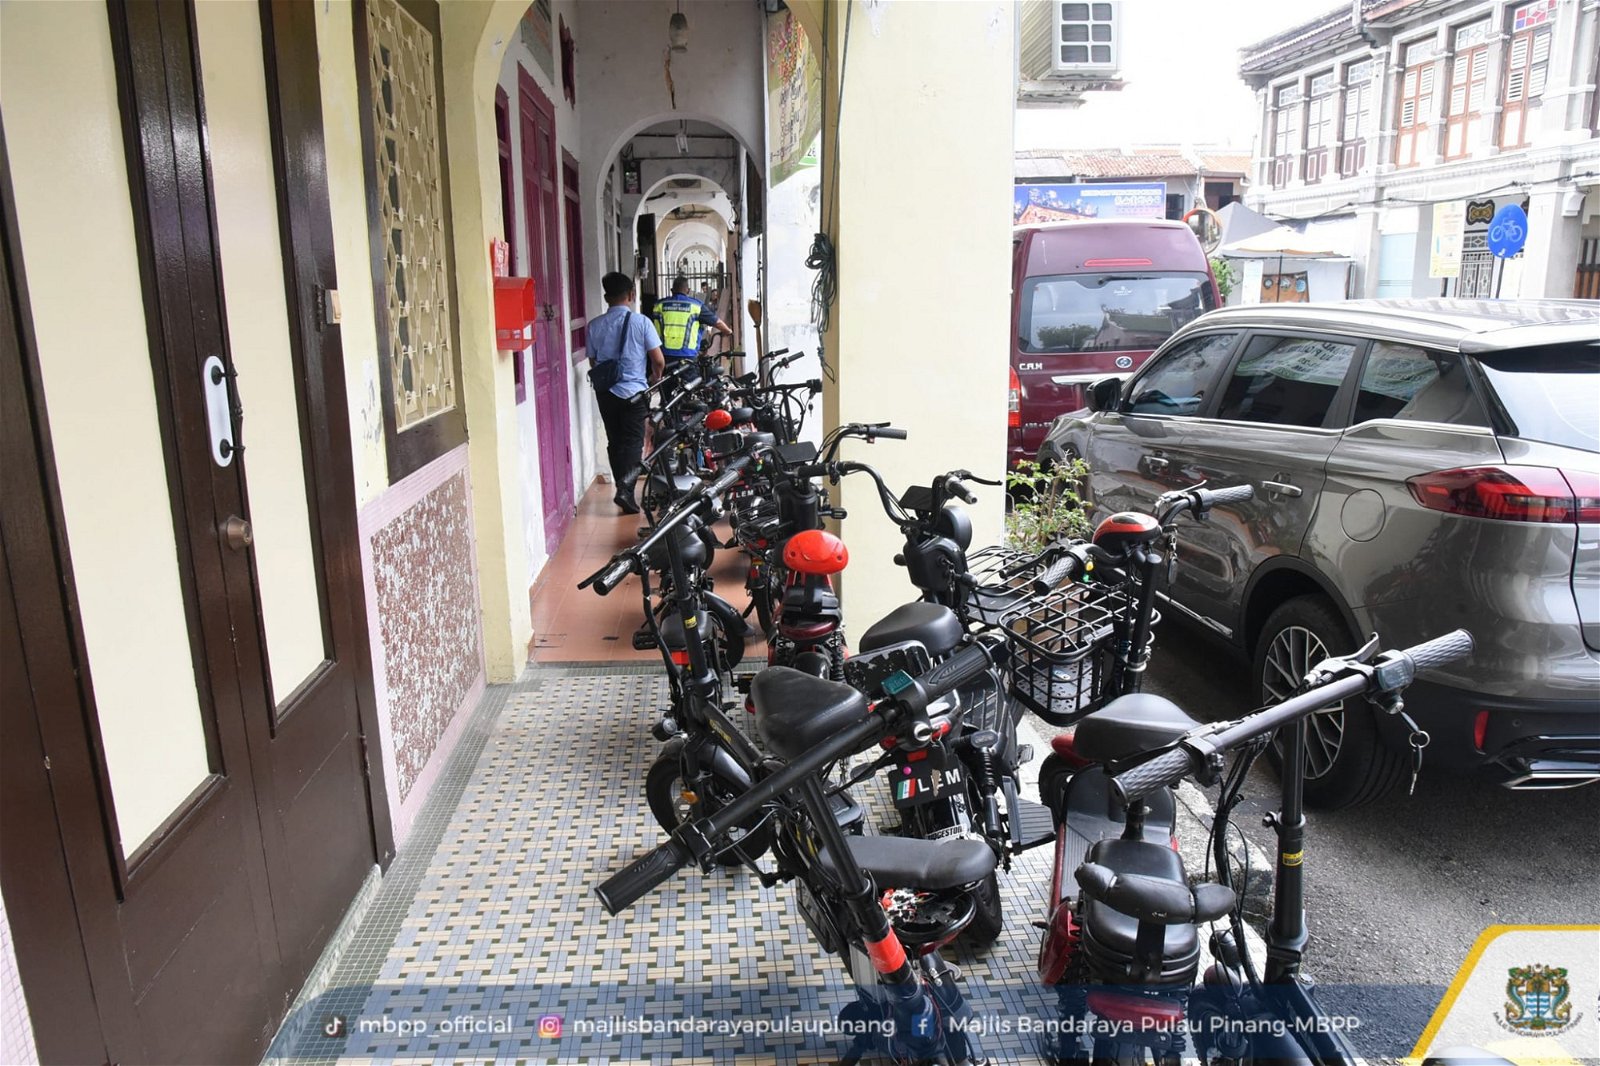 槟岛市政厅在这次的行动中，共充公44辆电动滑板车。